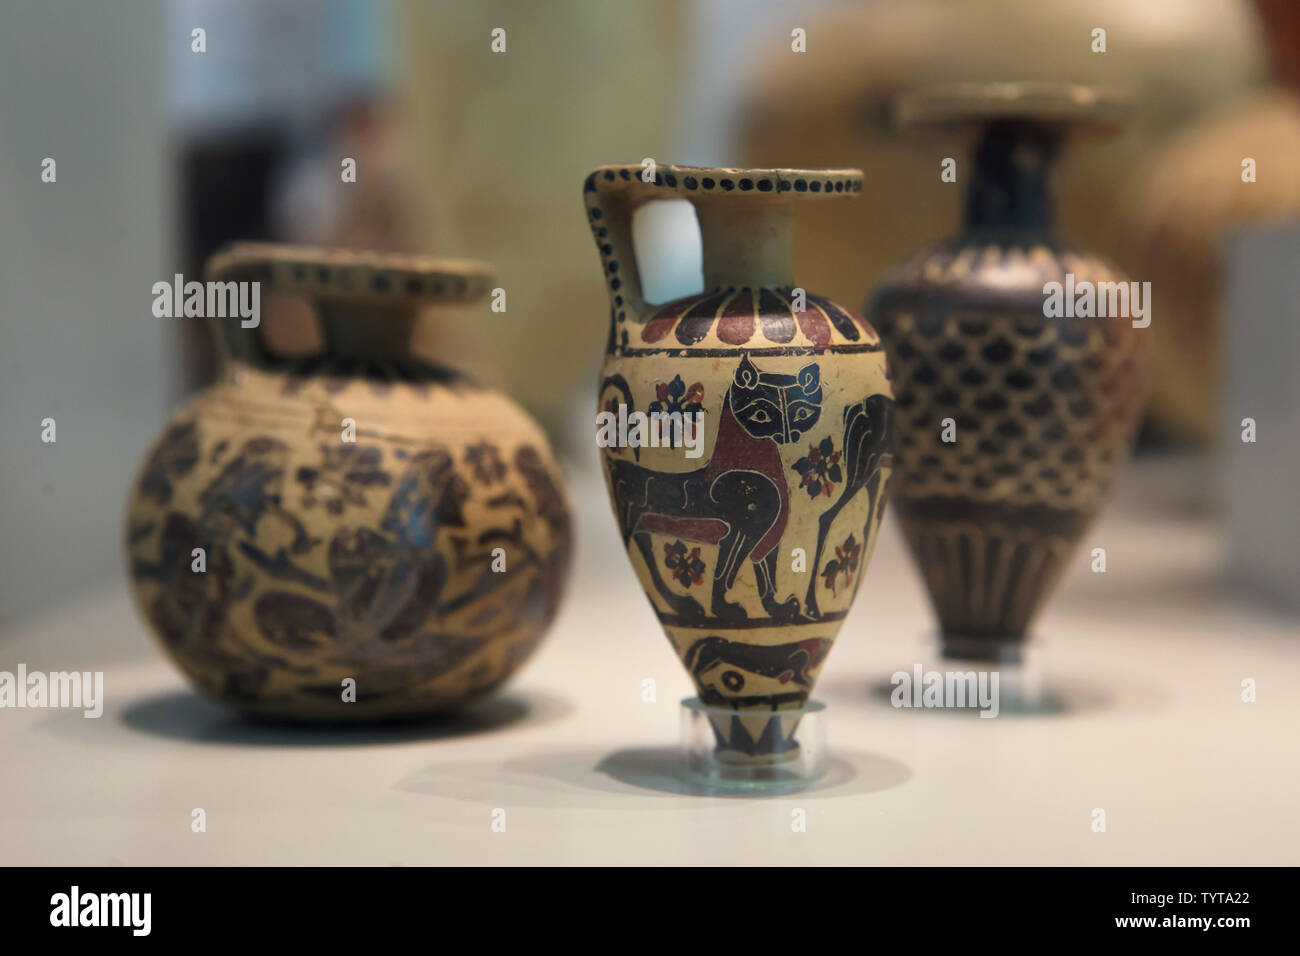 Antike Keramik mit korinthischen vase Malerei von um 700 v. Chr. datiert auf Anzeige im Alten Museum in Berlin eingerichtet. Stockfoto